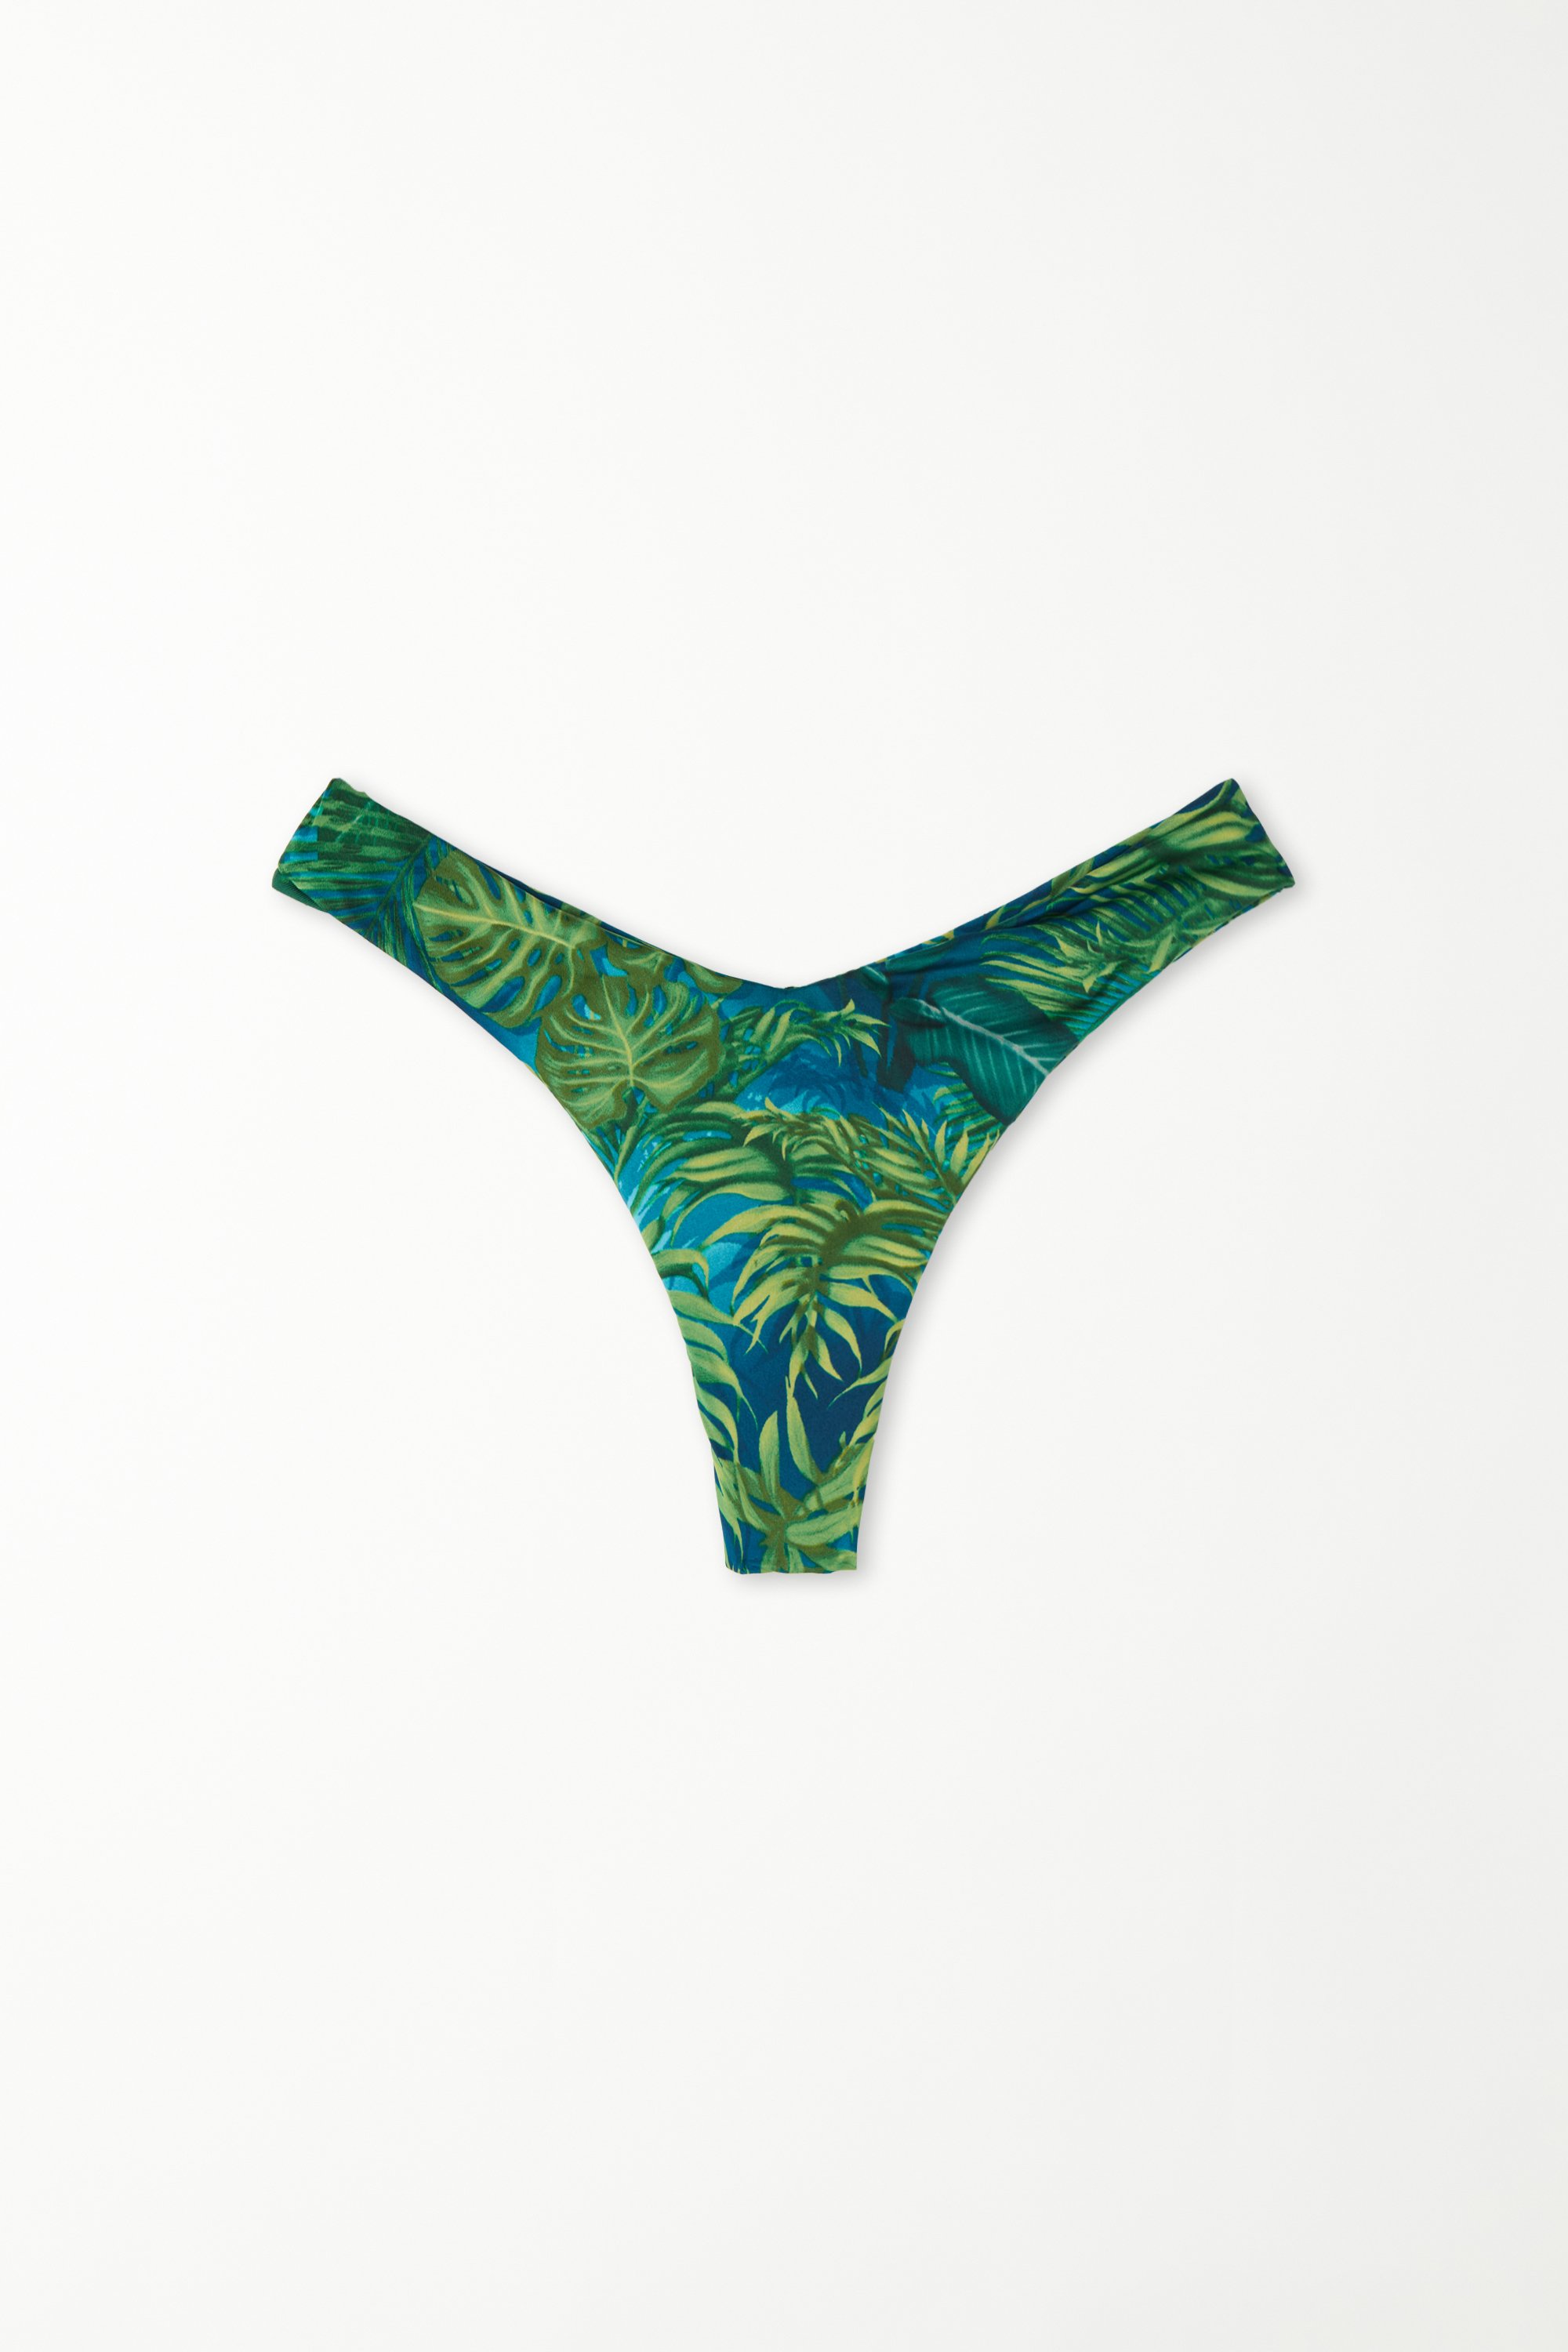 Emerald Jungle High-cut Brazilian Bikini Bottoms